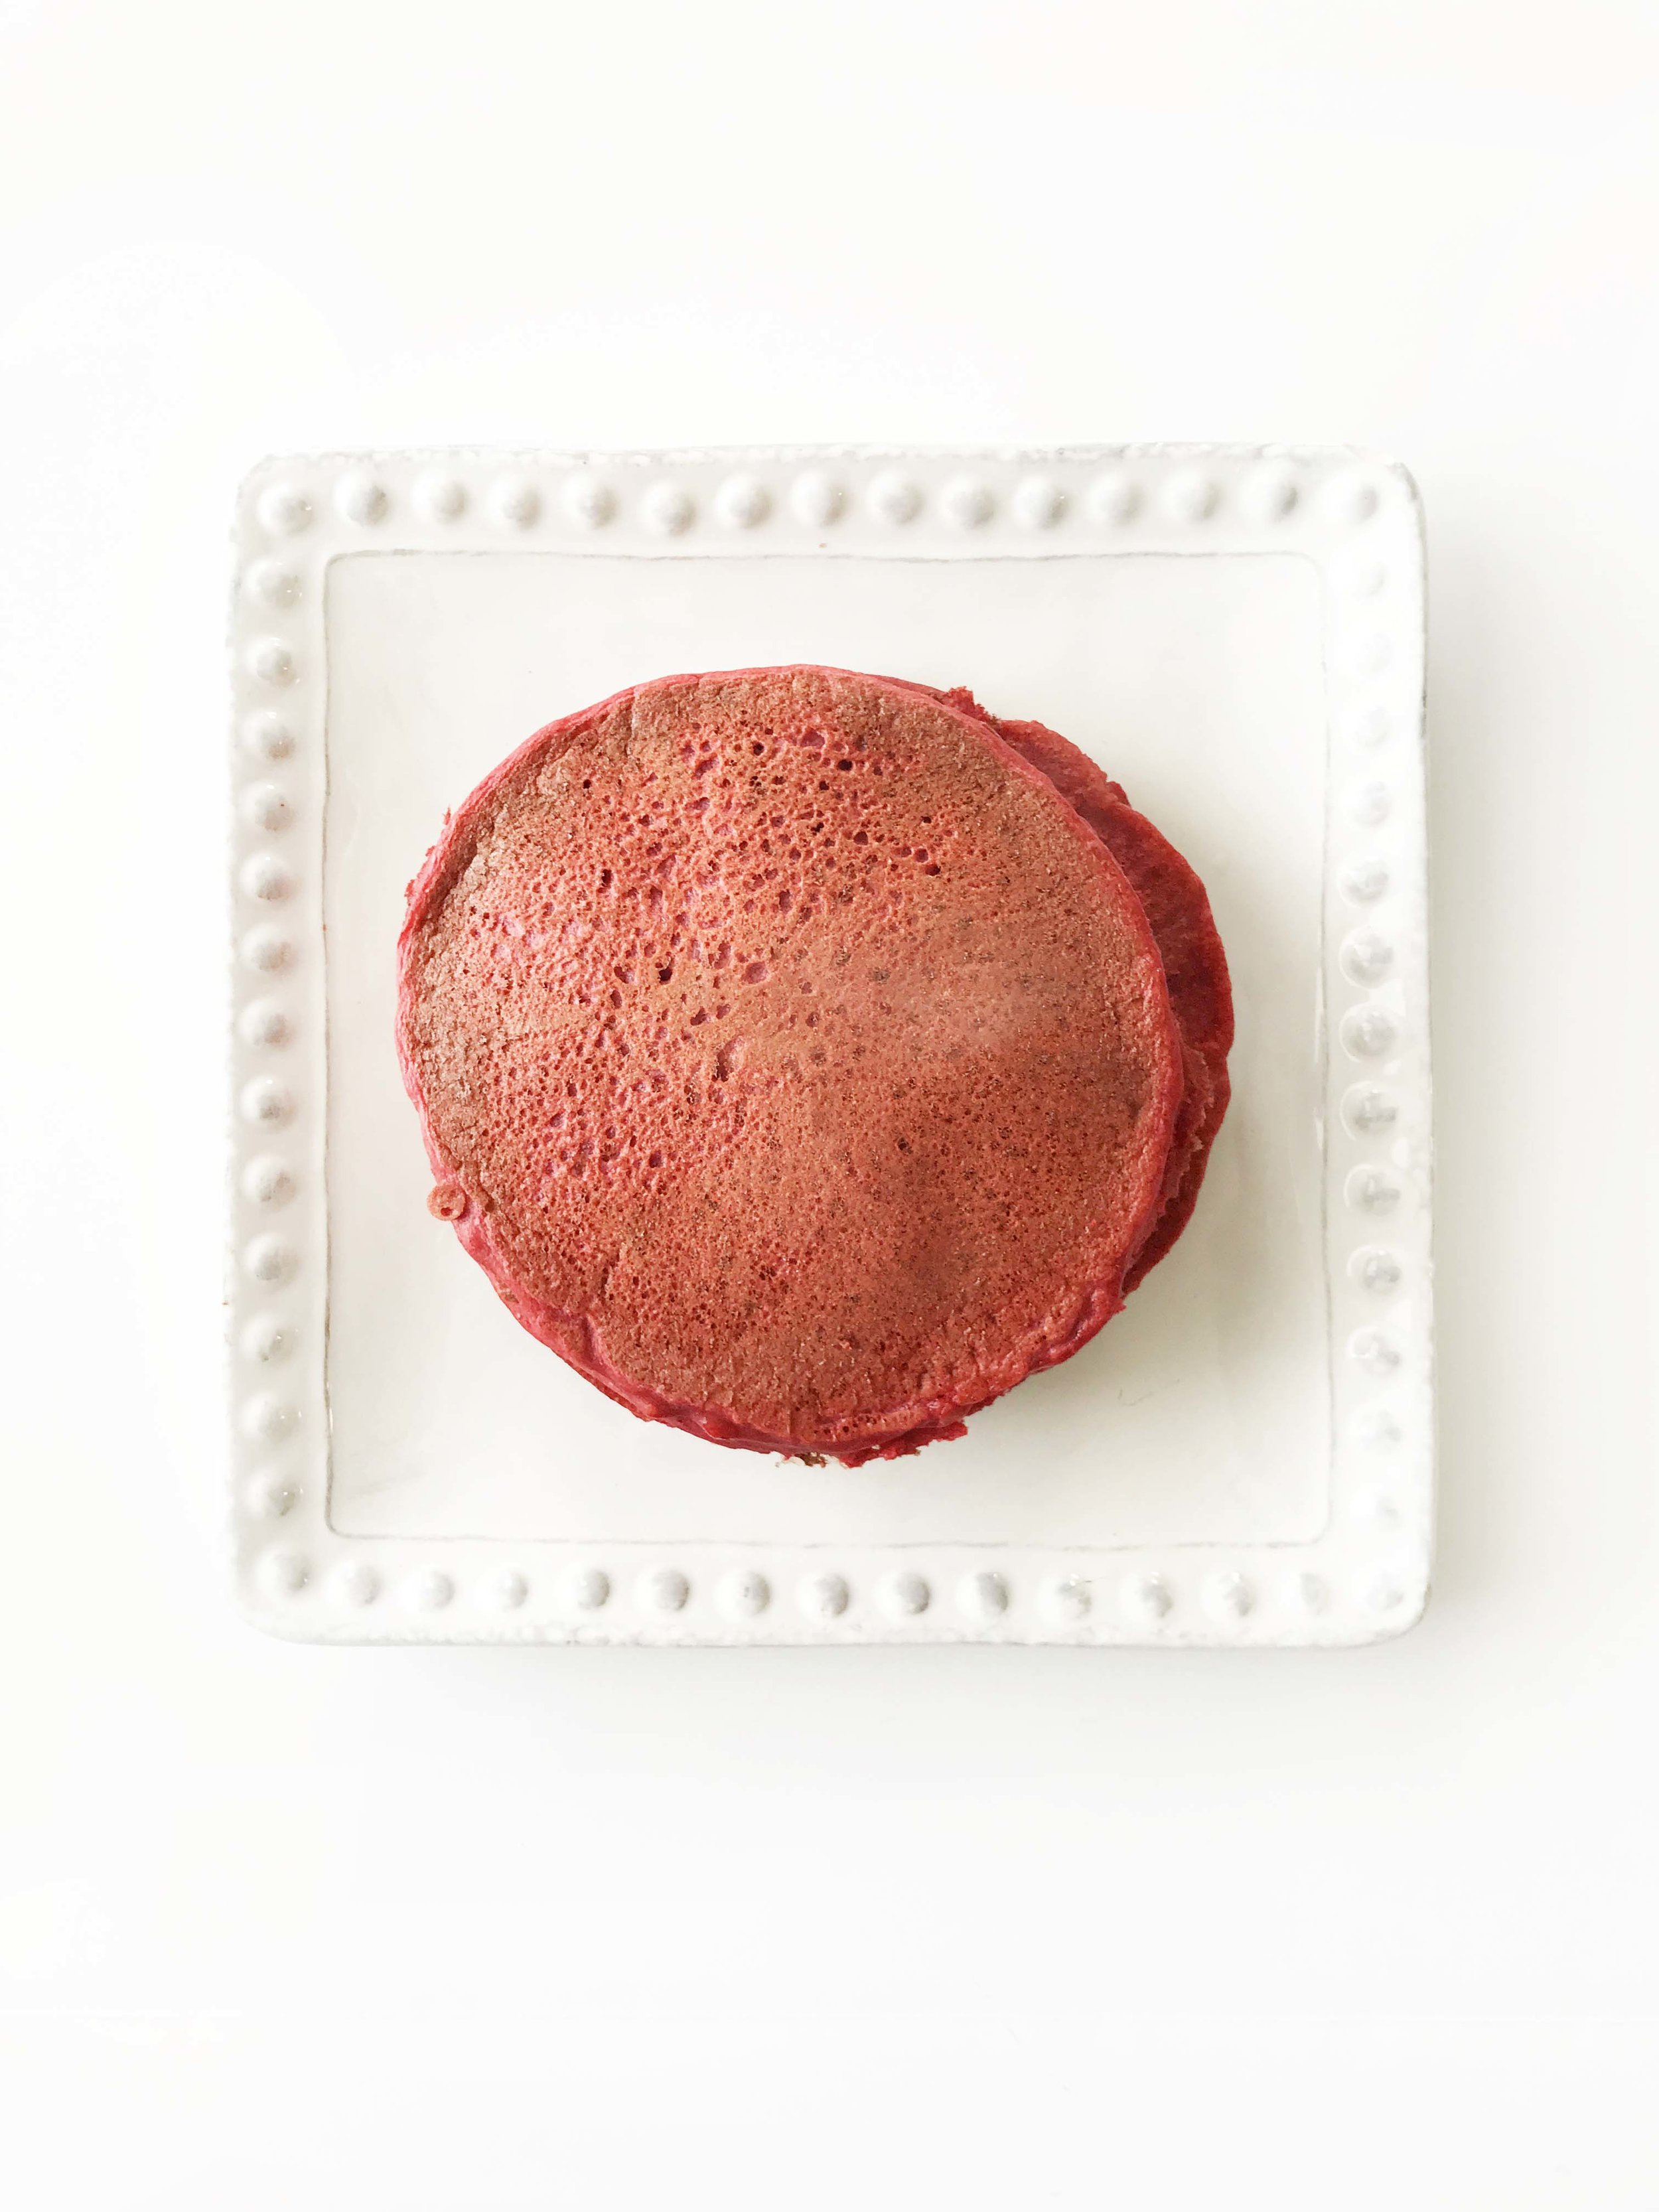 skinny-red-velvet-pancakes6.jpg